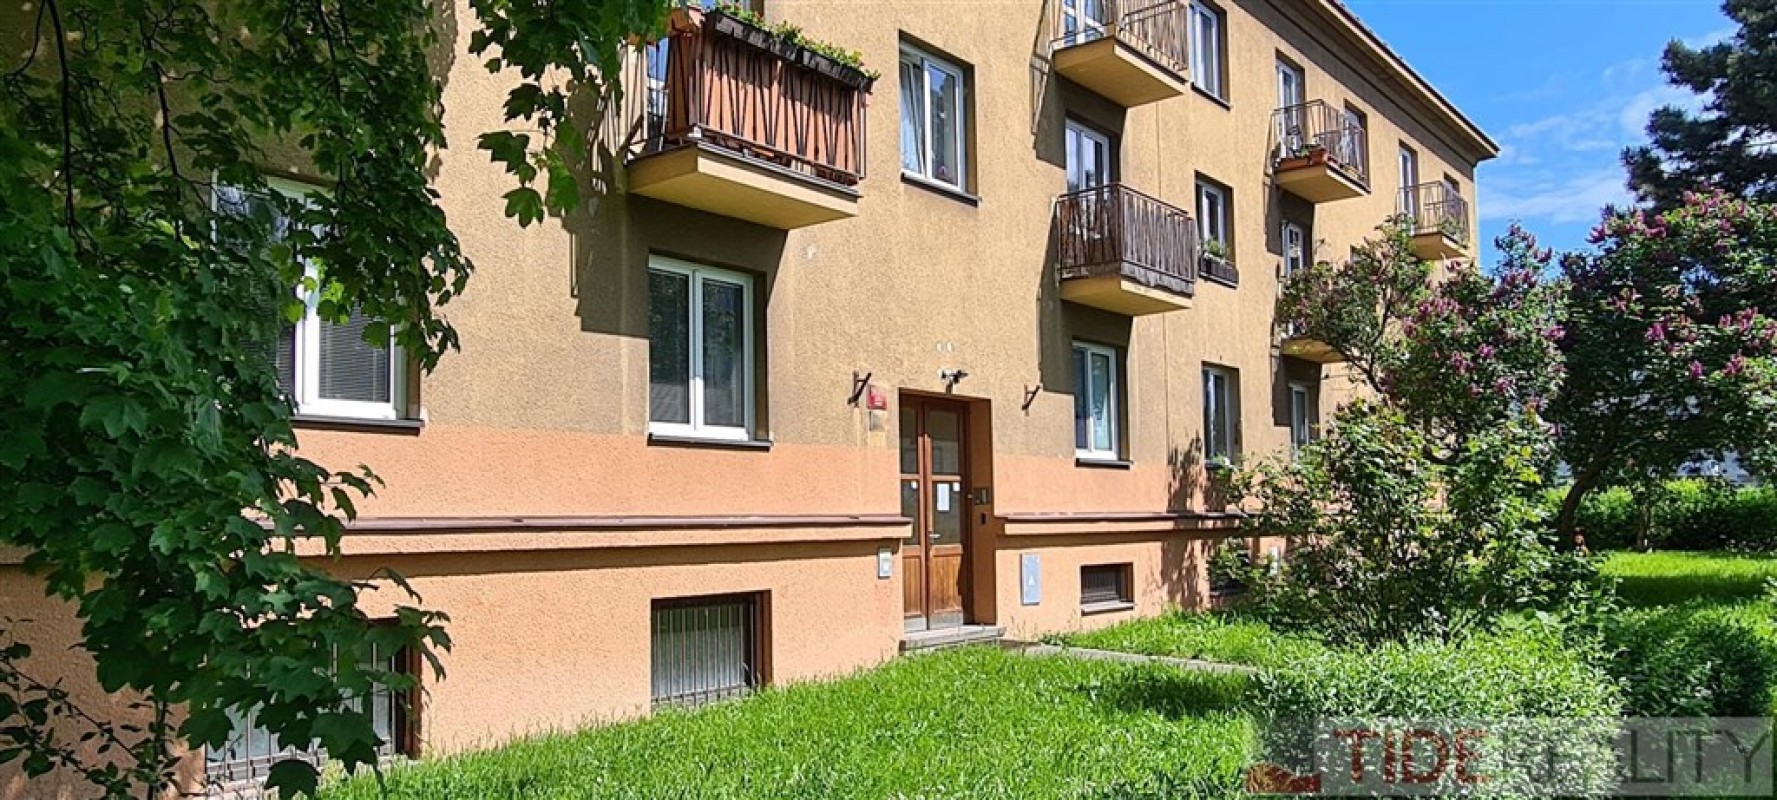 Prostorný světlý byt 2+1 s dvěma balkony, sklepem, celkem 62 m2, Praha 8 Kobylisy